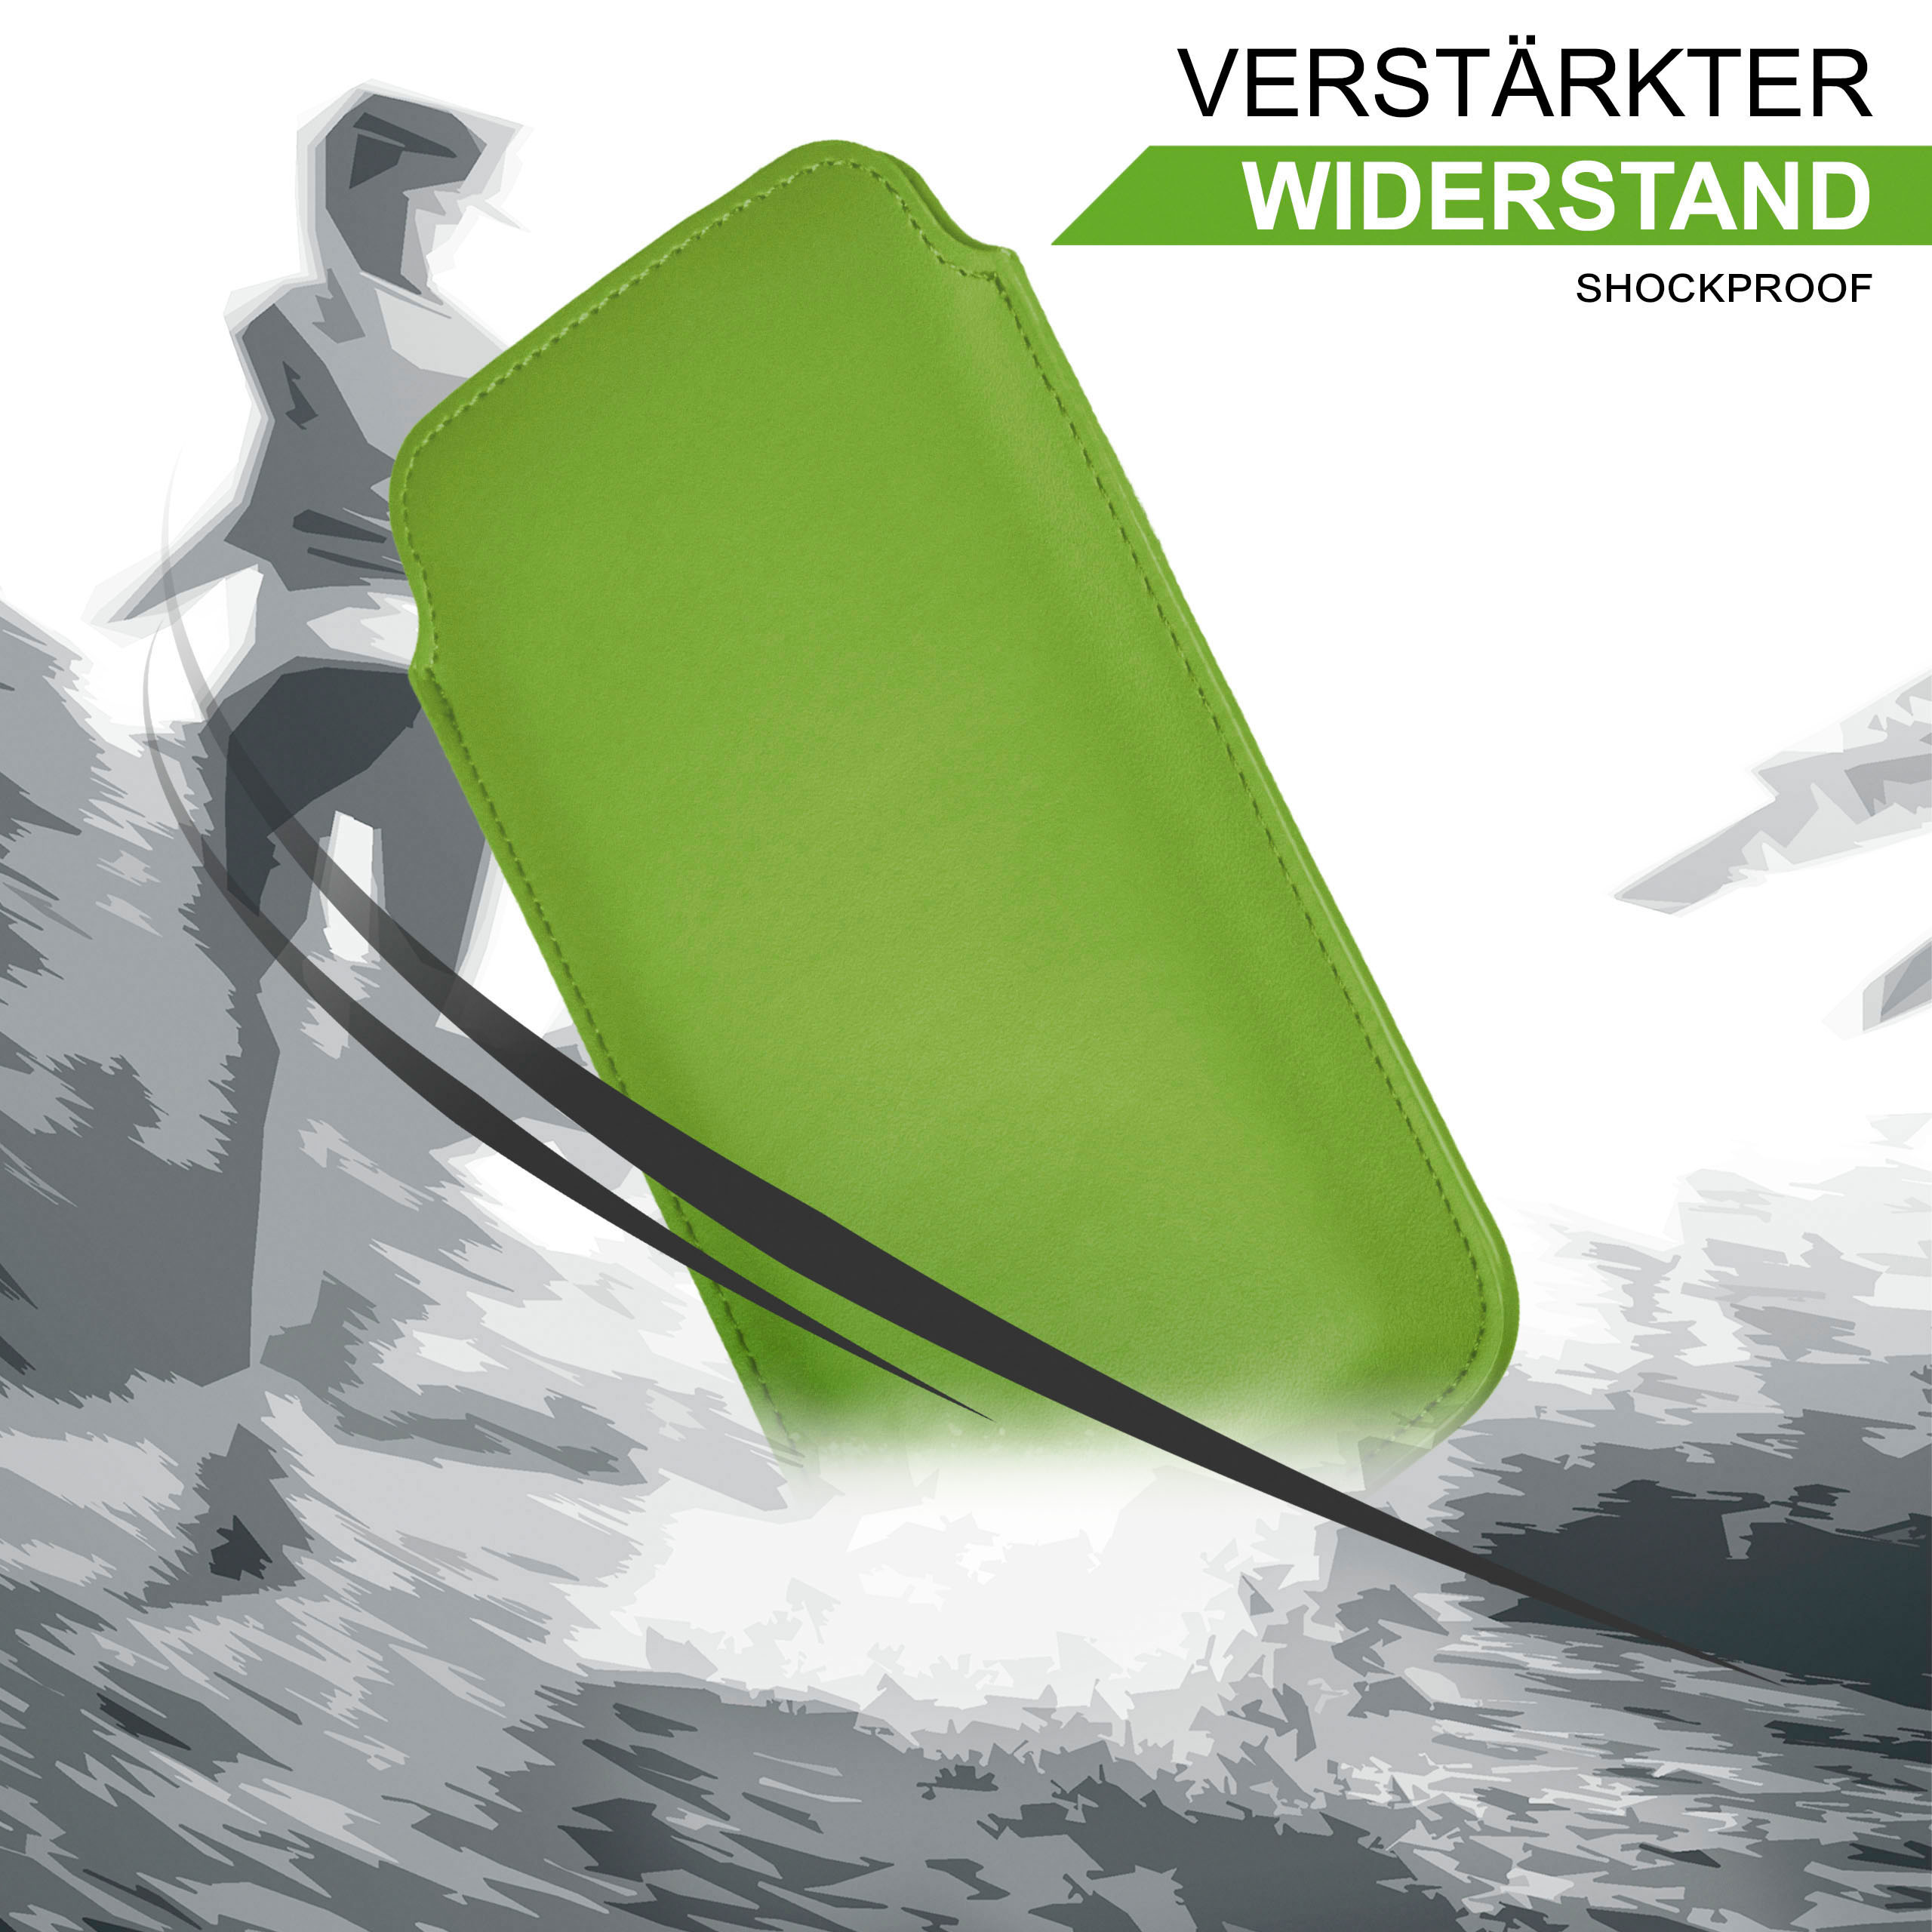 Slide Lime-Green Emporia, Basic, Full Cover, Flip MOEX Case,